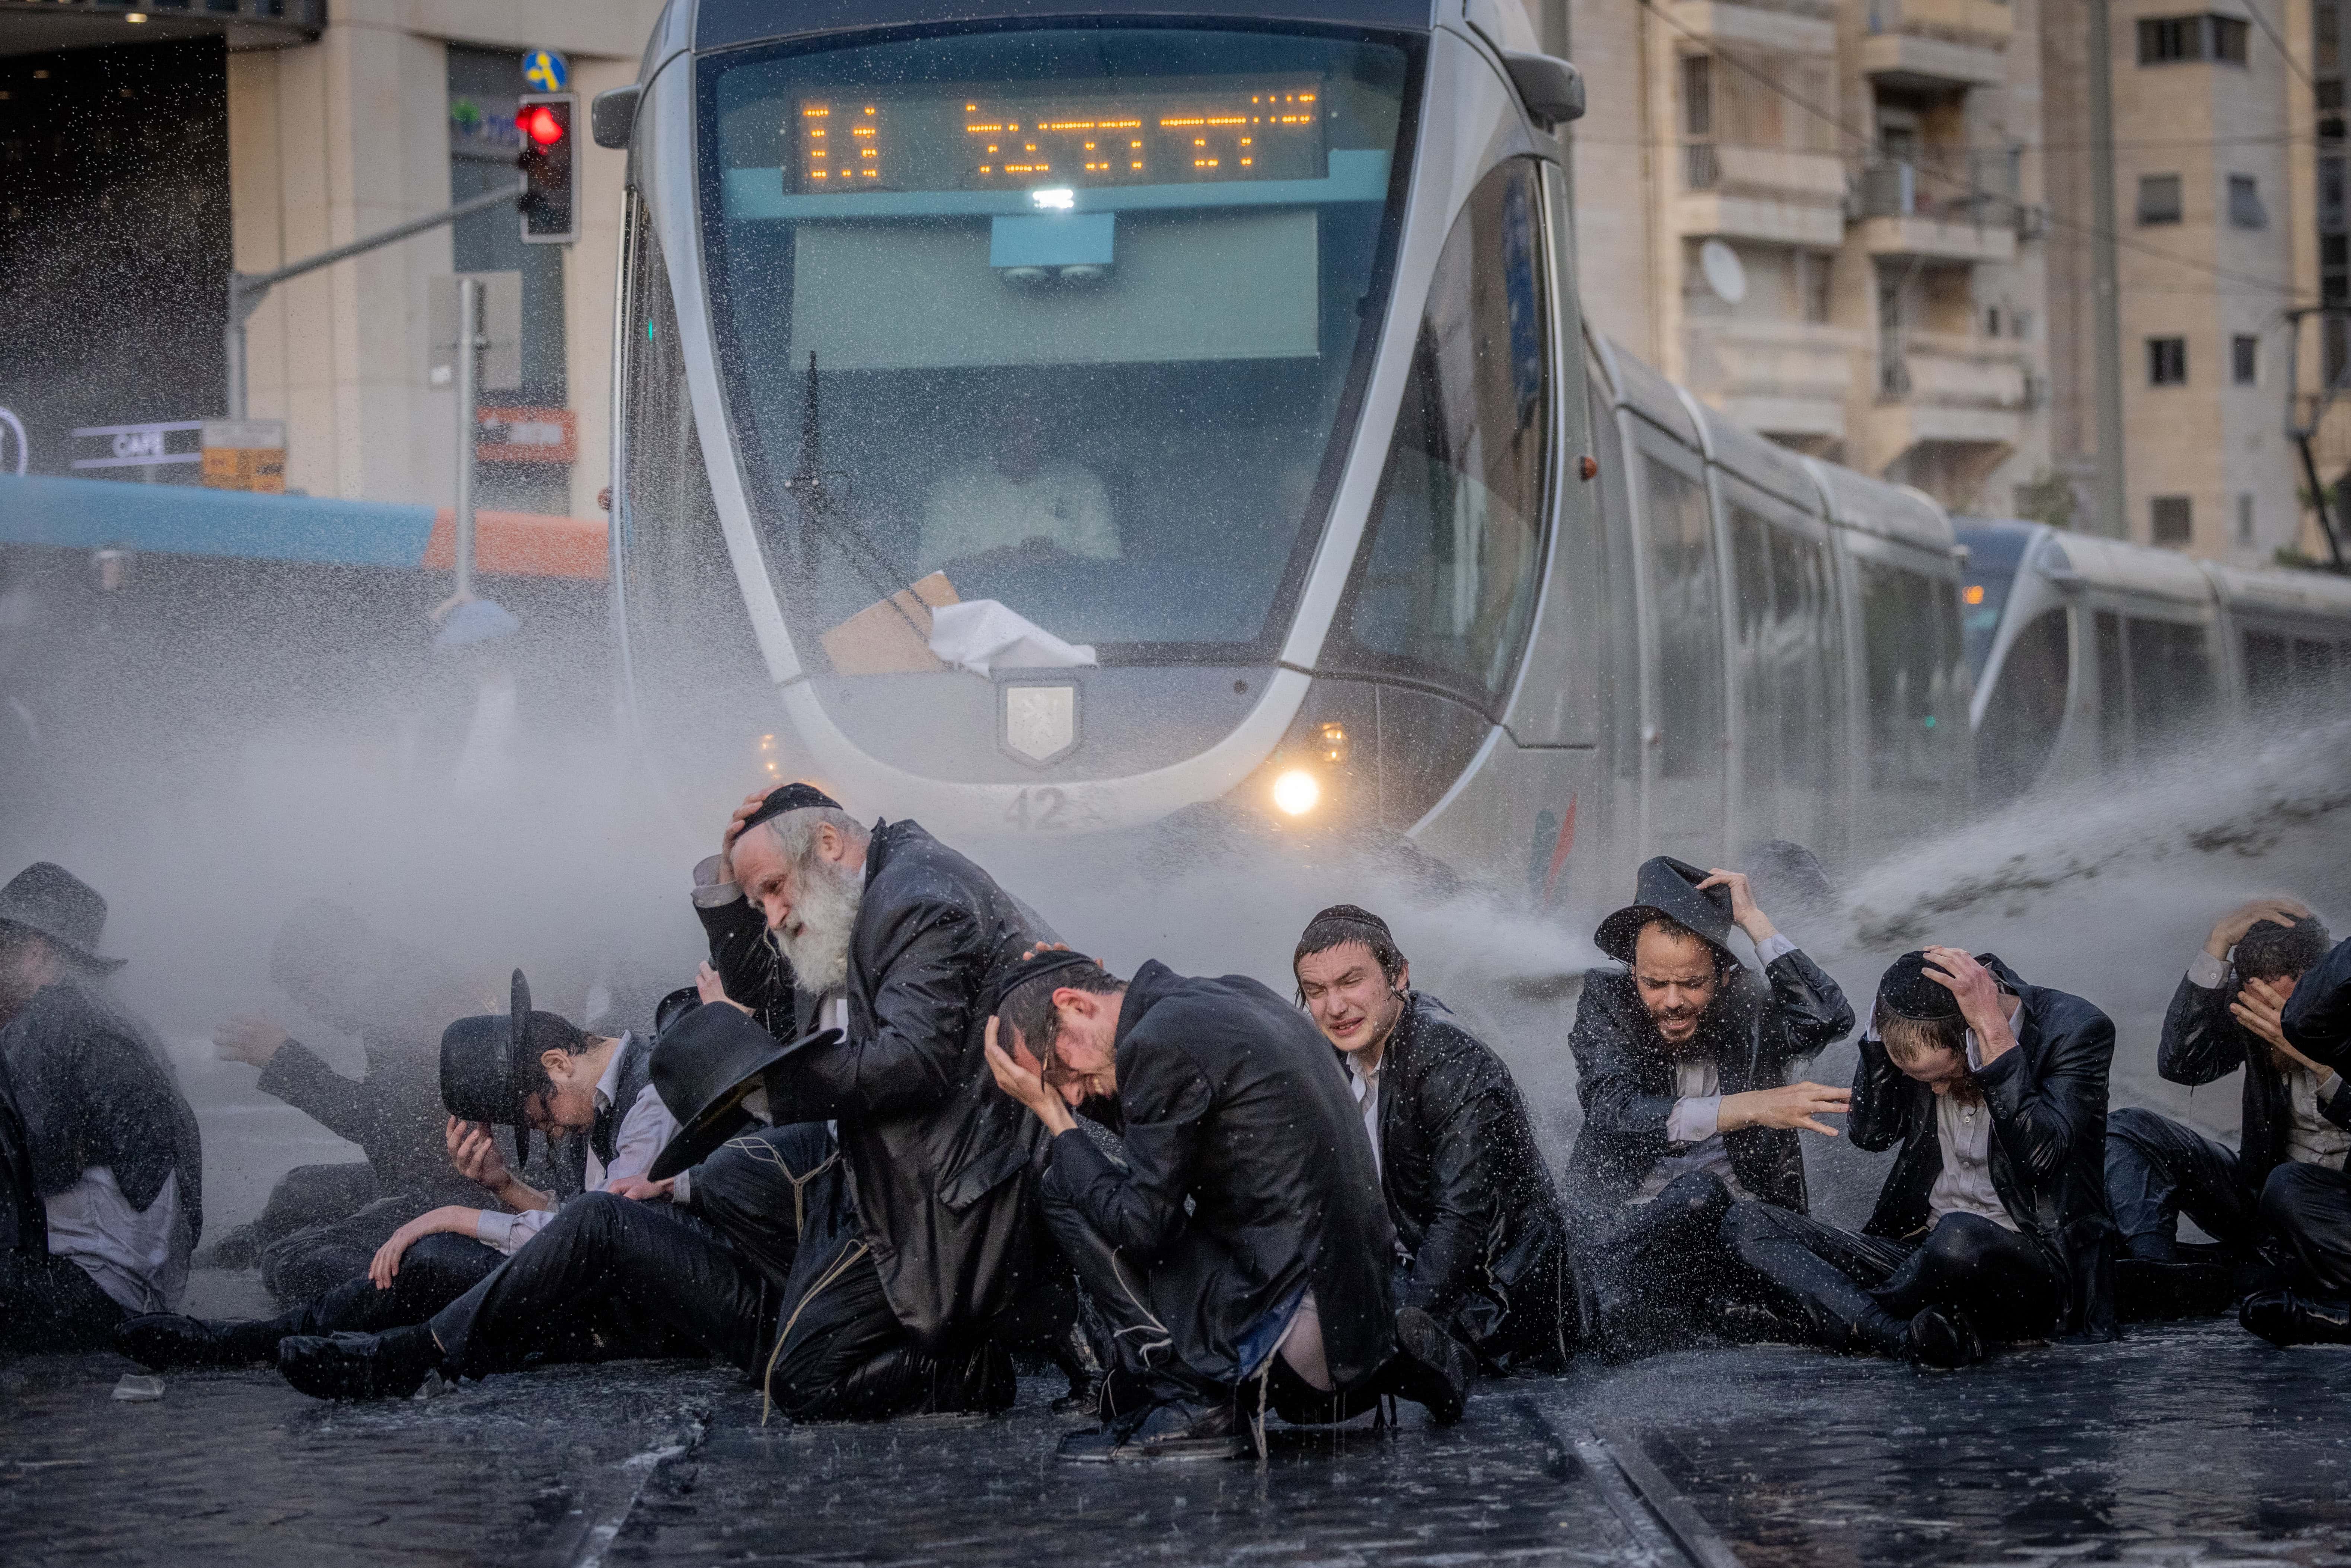 חרדים מפגינים נגד גיוס לצה"ל וסופגים זרם מים ממכת"זית. ירושלים, אתמול (צילום: חיים גולדברג)